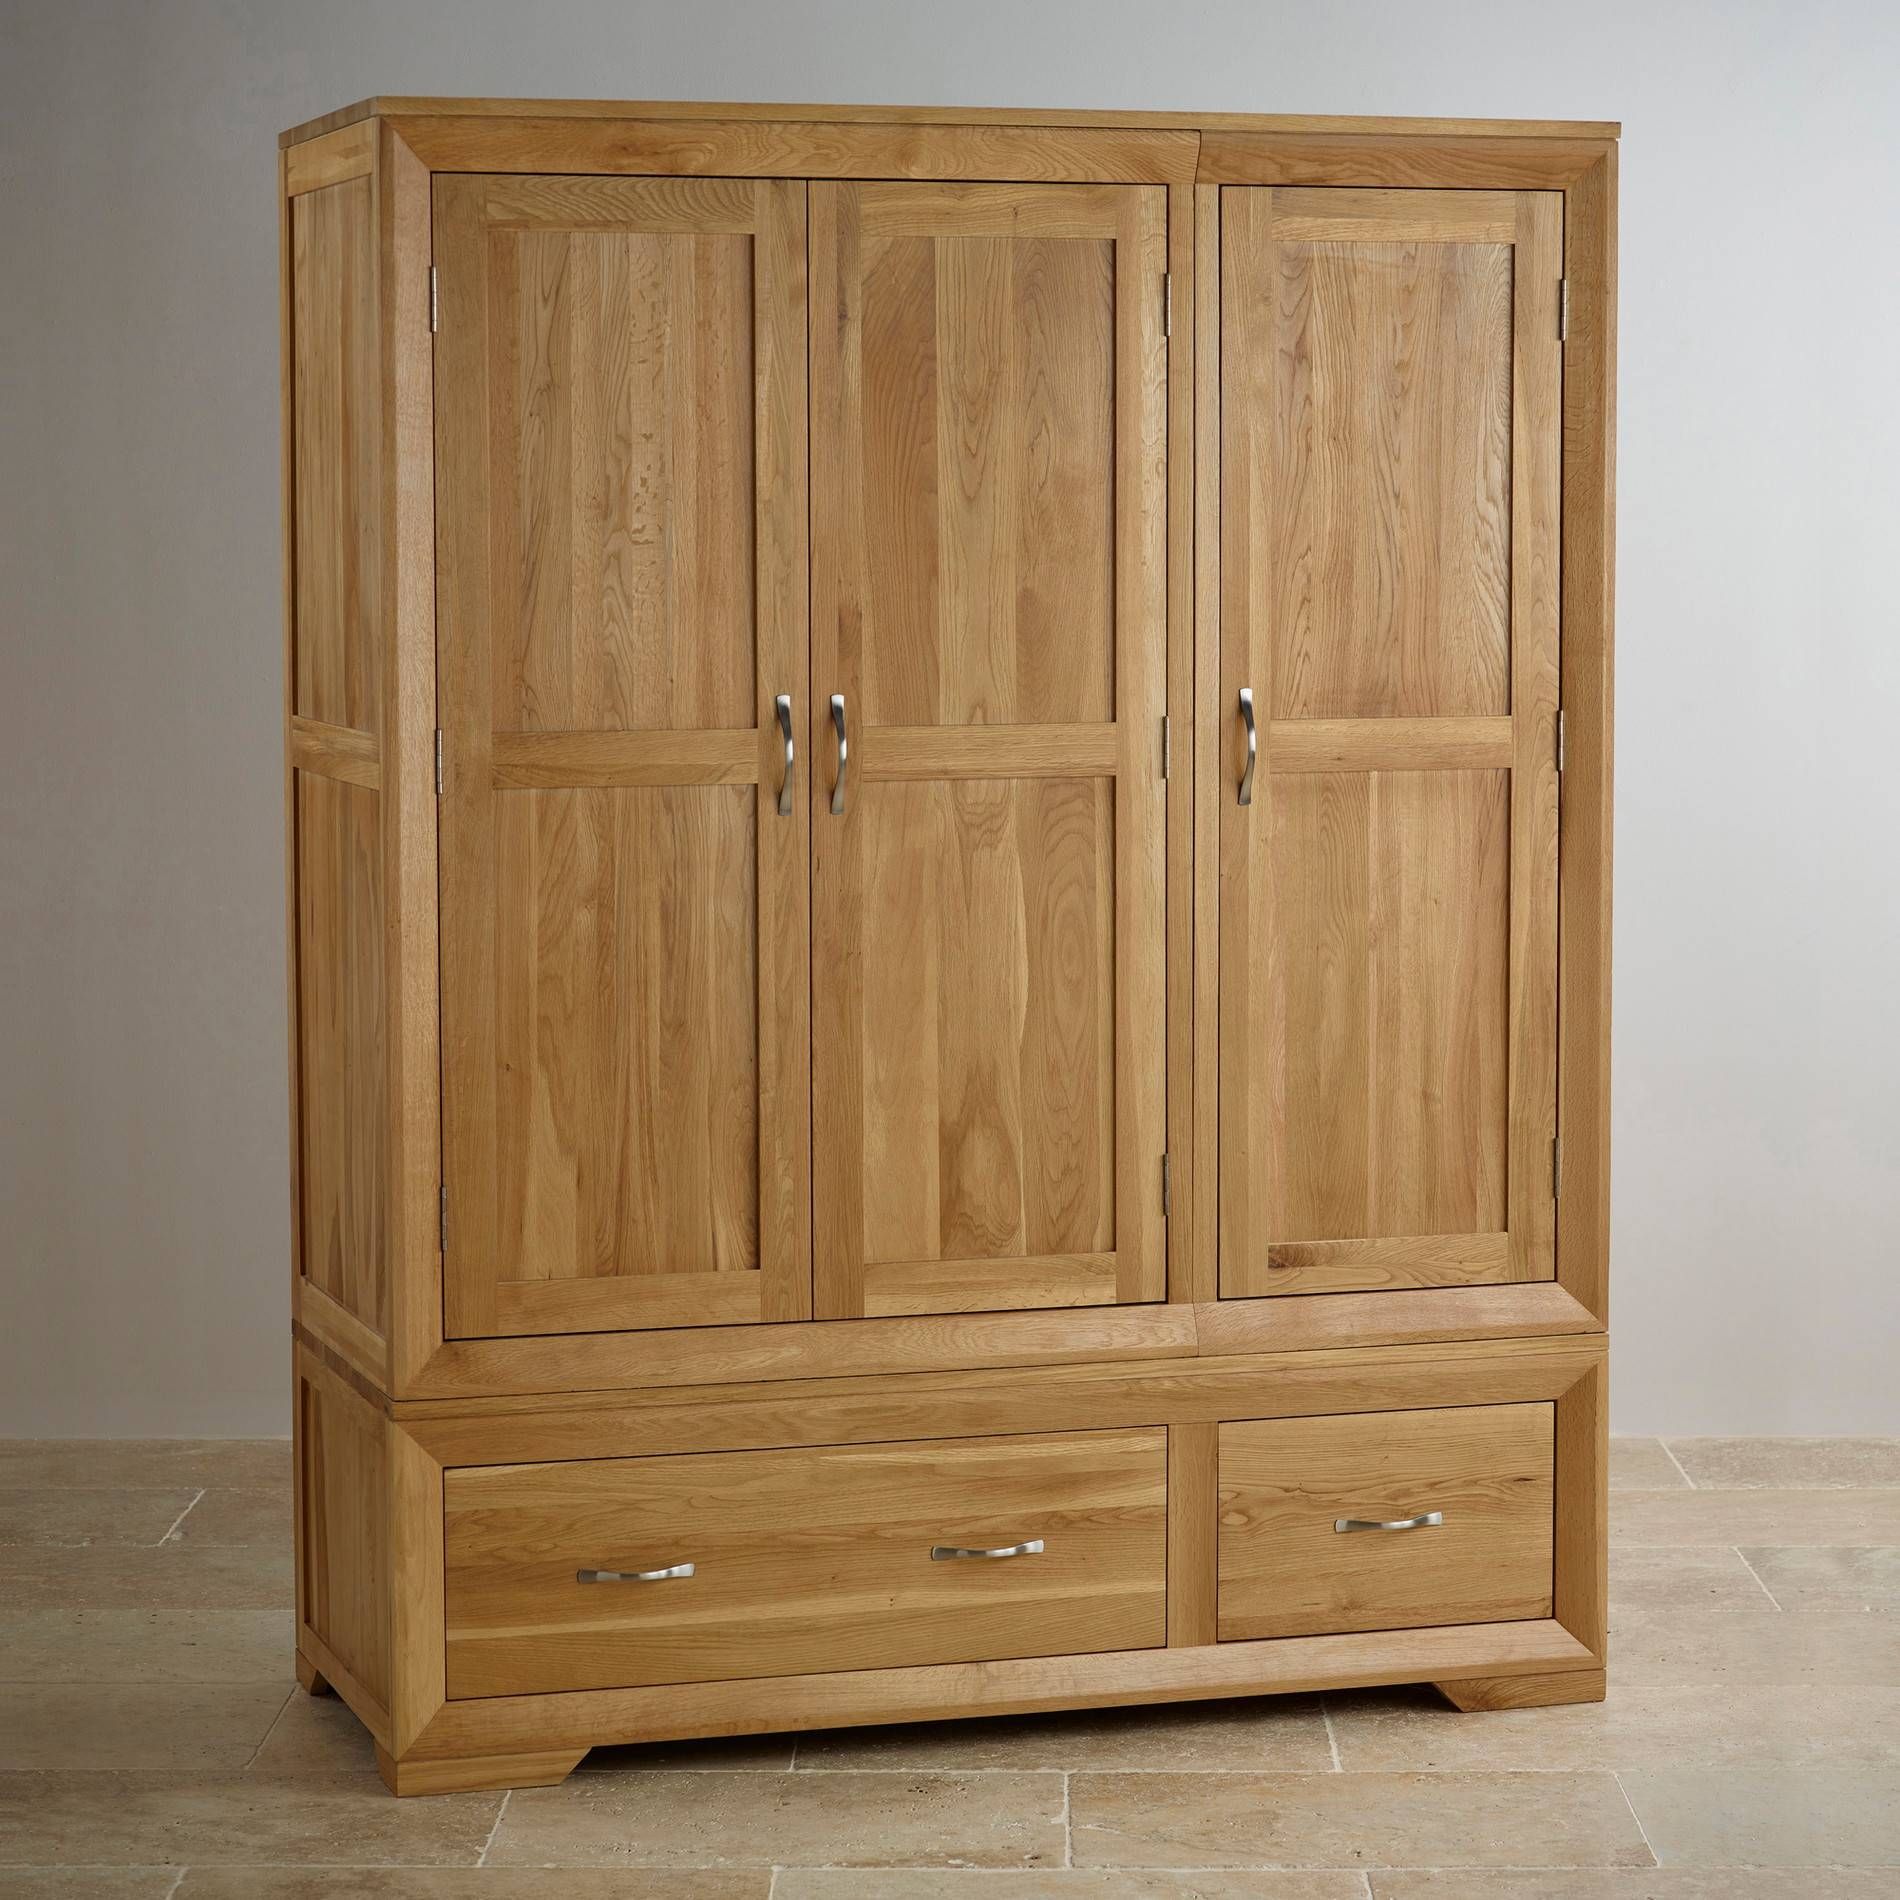 Bevel Natural Solid Oak Wardrobe | Bedroom Furniture Inside Self Assembly Wardrobes (Photo 12 of 15)